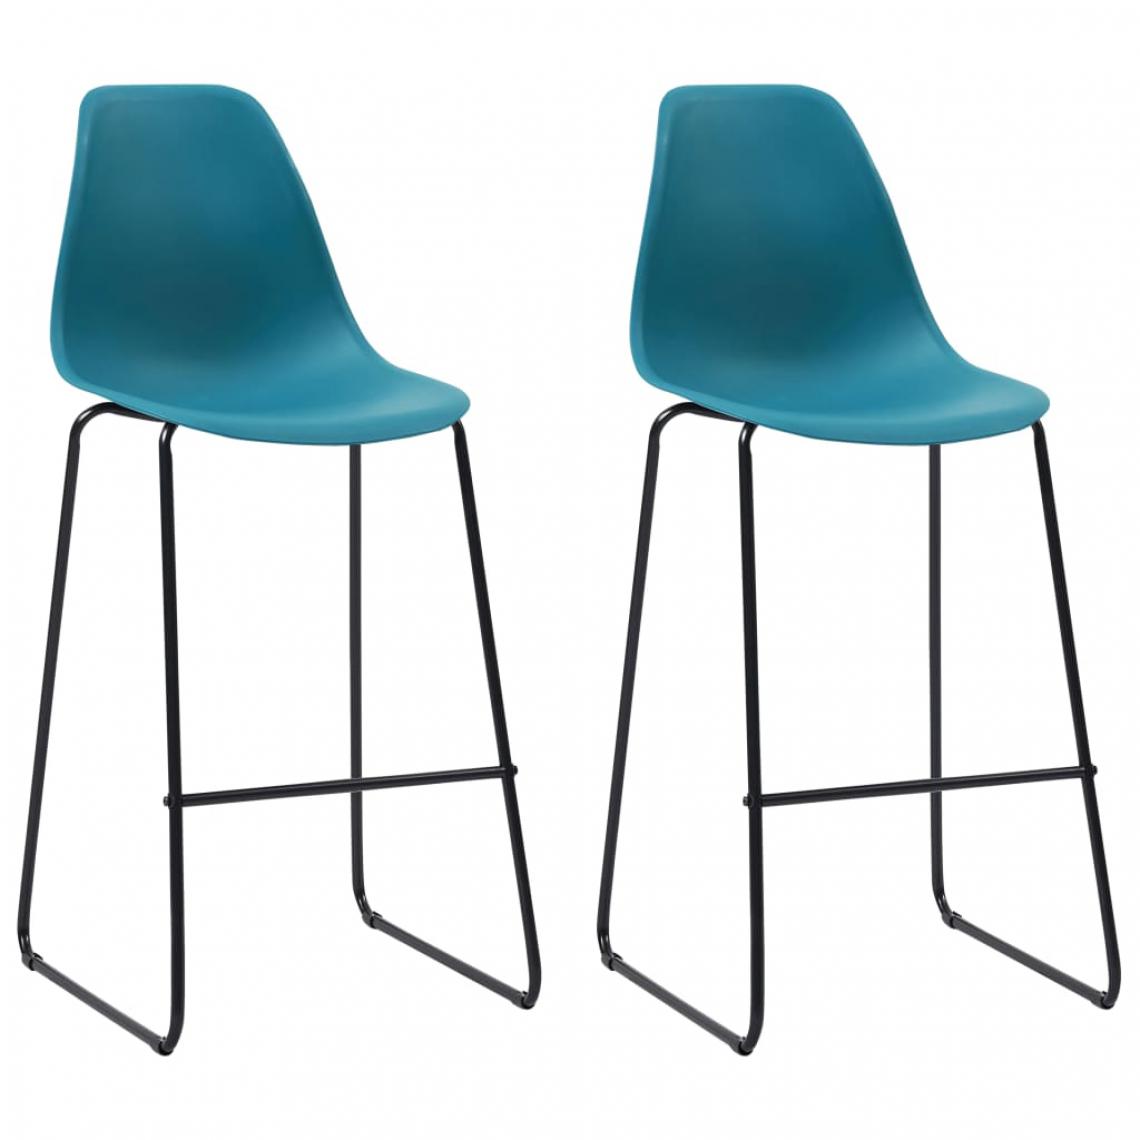 Icaverne - Stylé Fauteuils et chaises serie Tbilissi Chaises de bar 2 pcs Turquoise Plastique - Tabourets